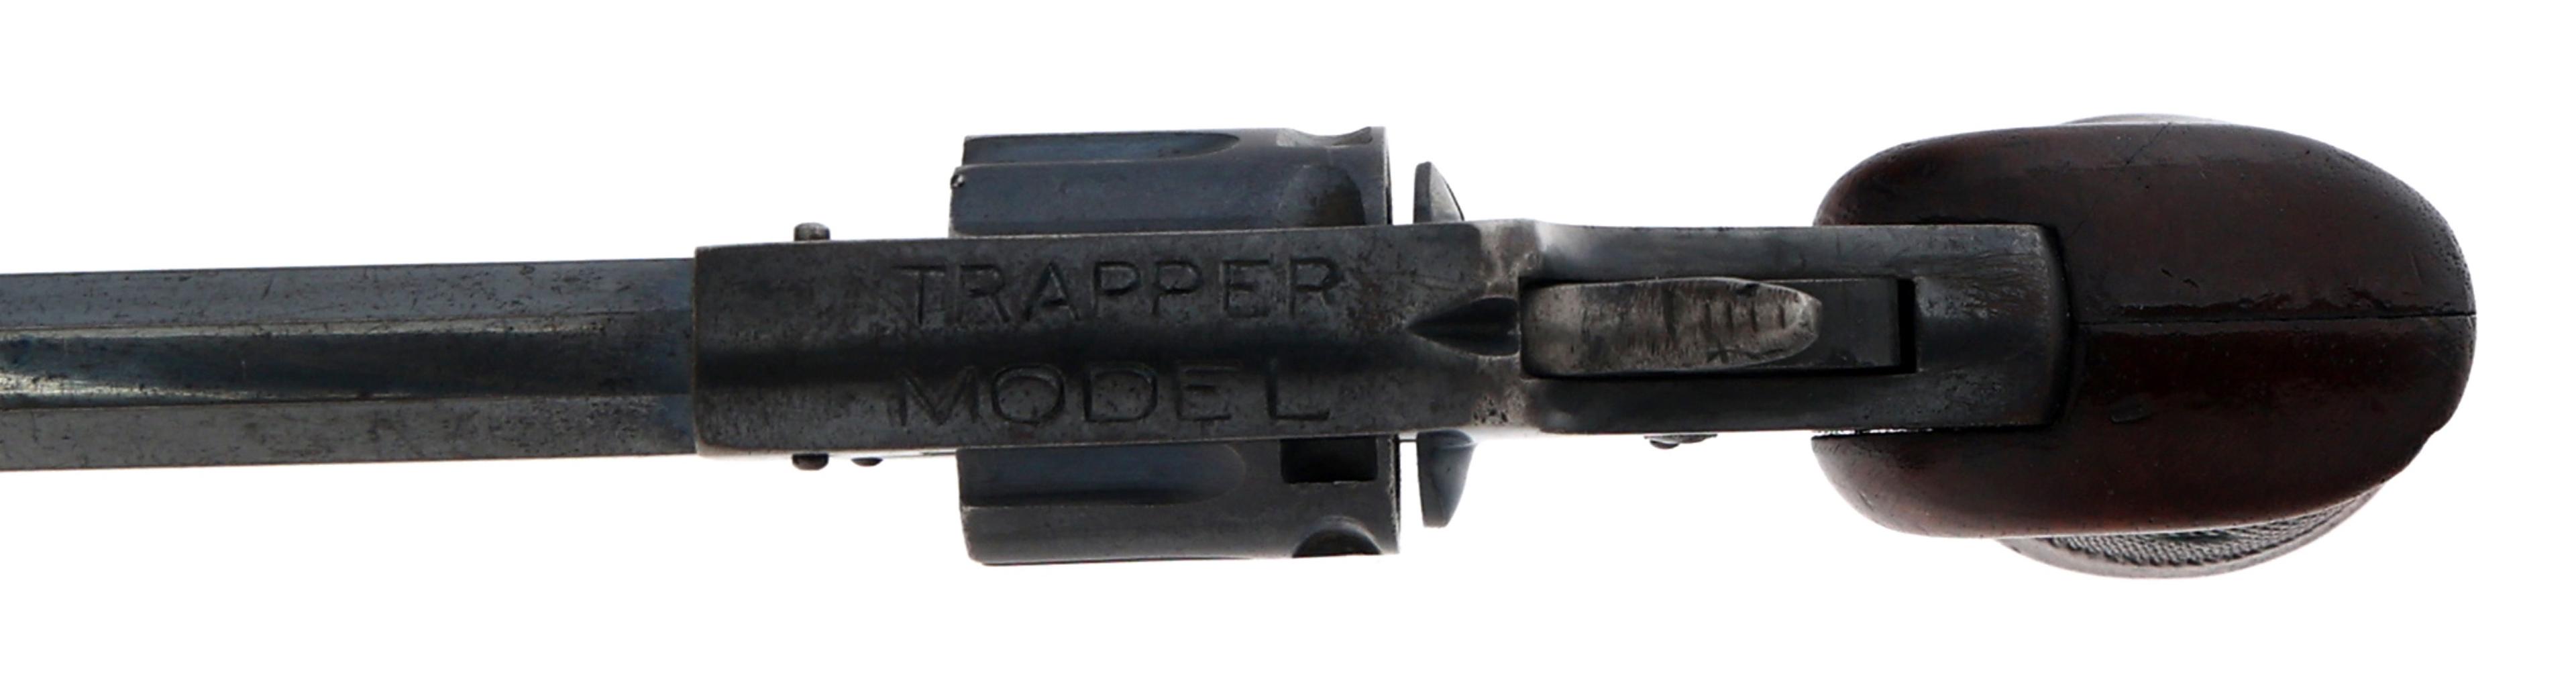 H&R TRAPPER MODEL 22 RIM FIRE CALIBER REVOLVER